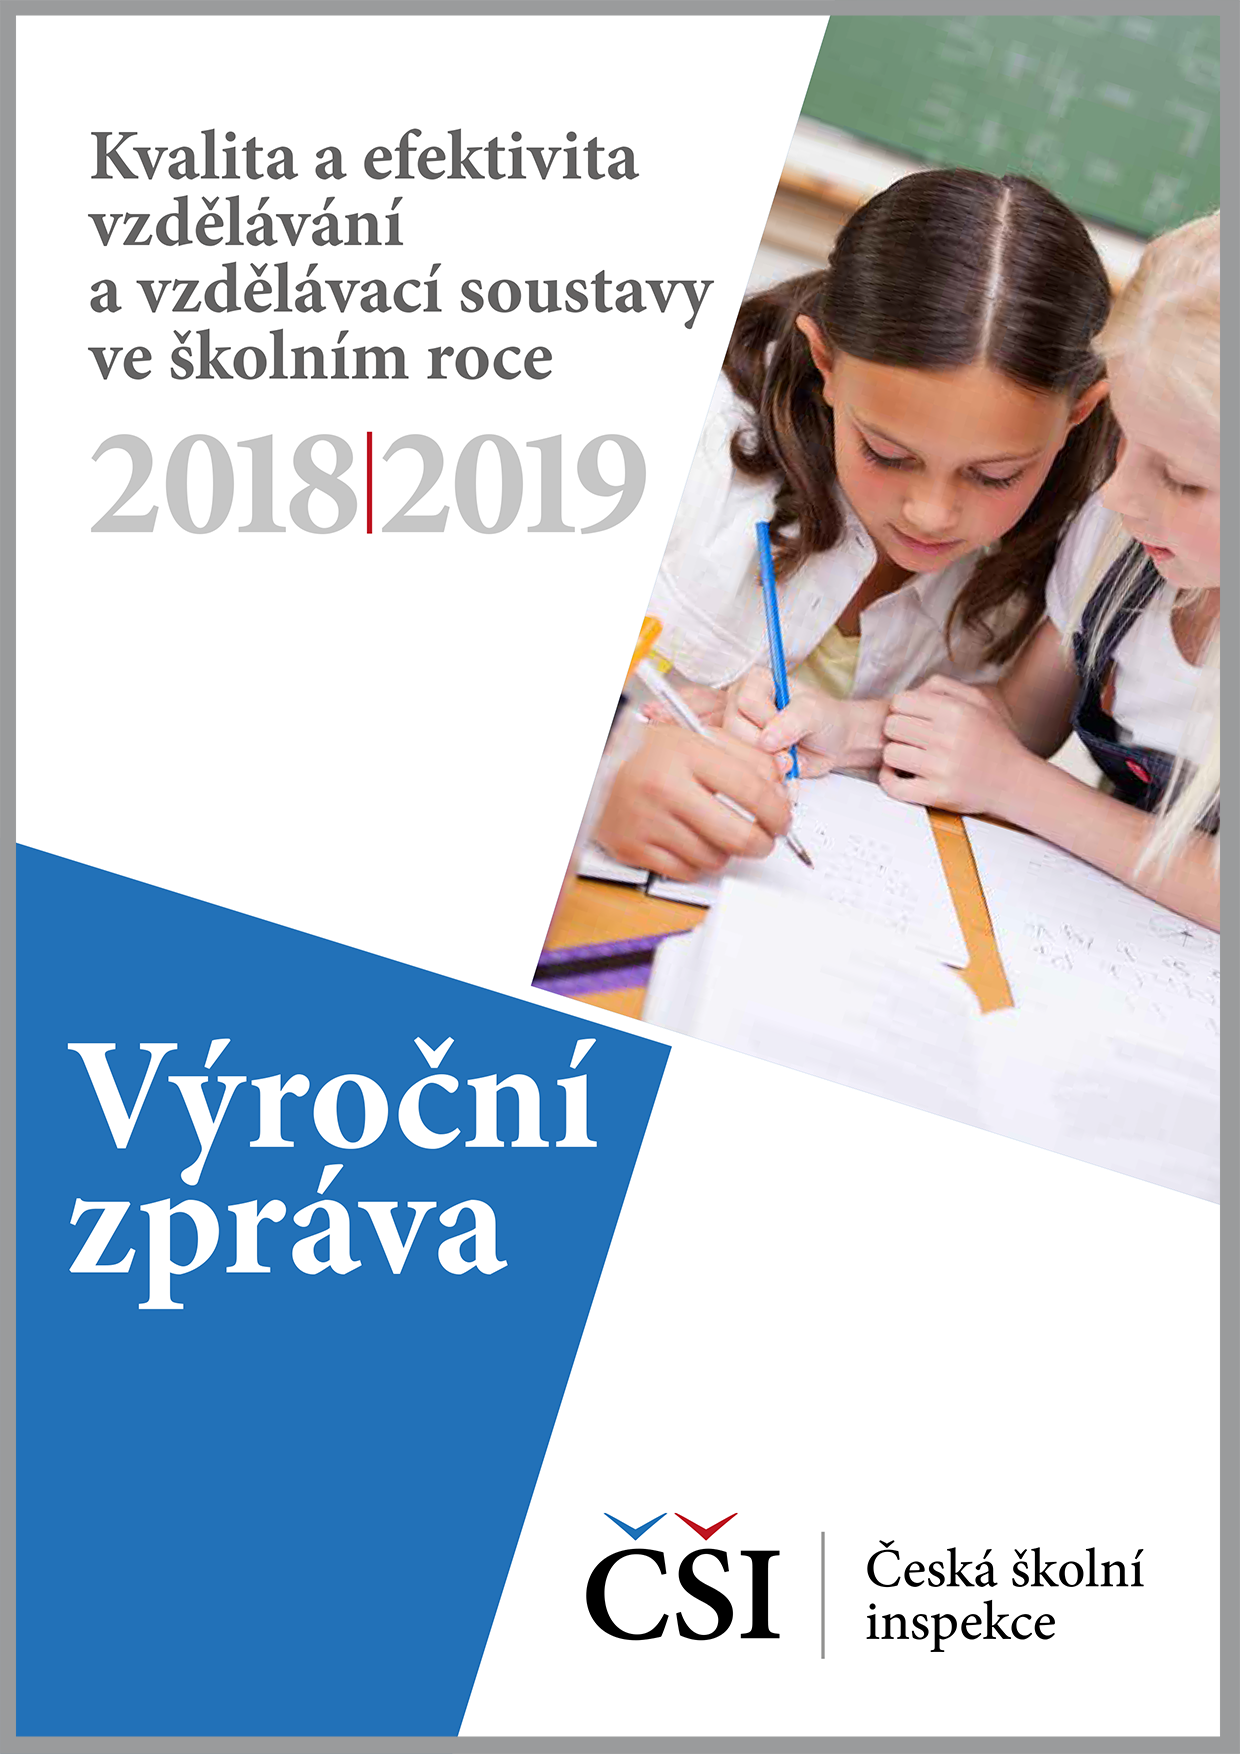 Kvalita a efektivita vzdělávání a vzdělávací soustavy ve školním roce 2018/2019 - výroční zpráva ČŠI